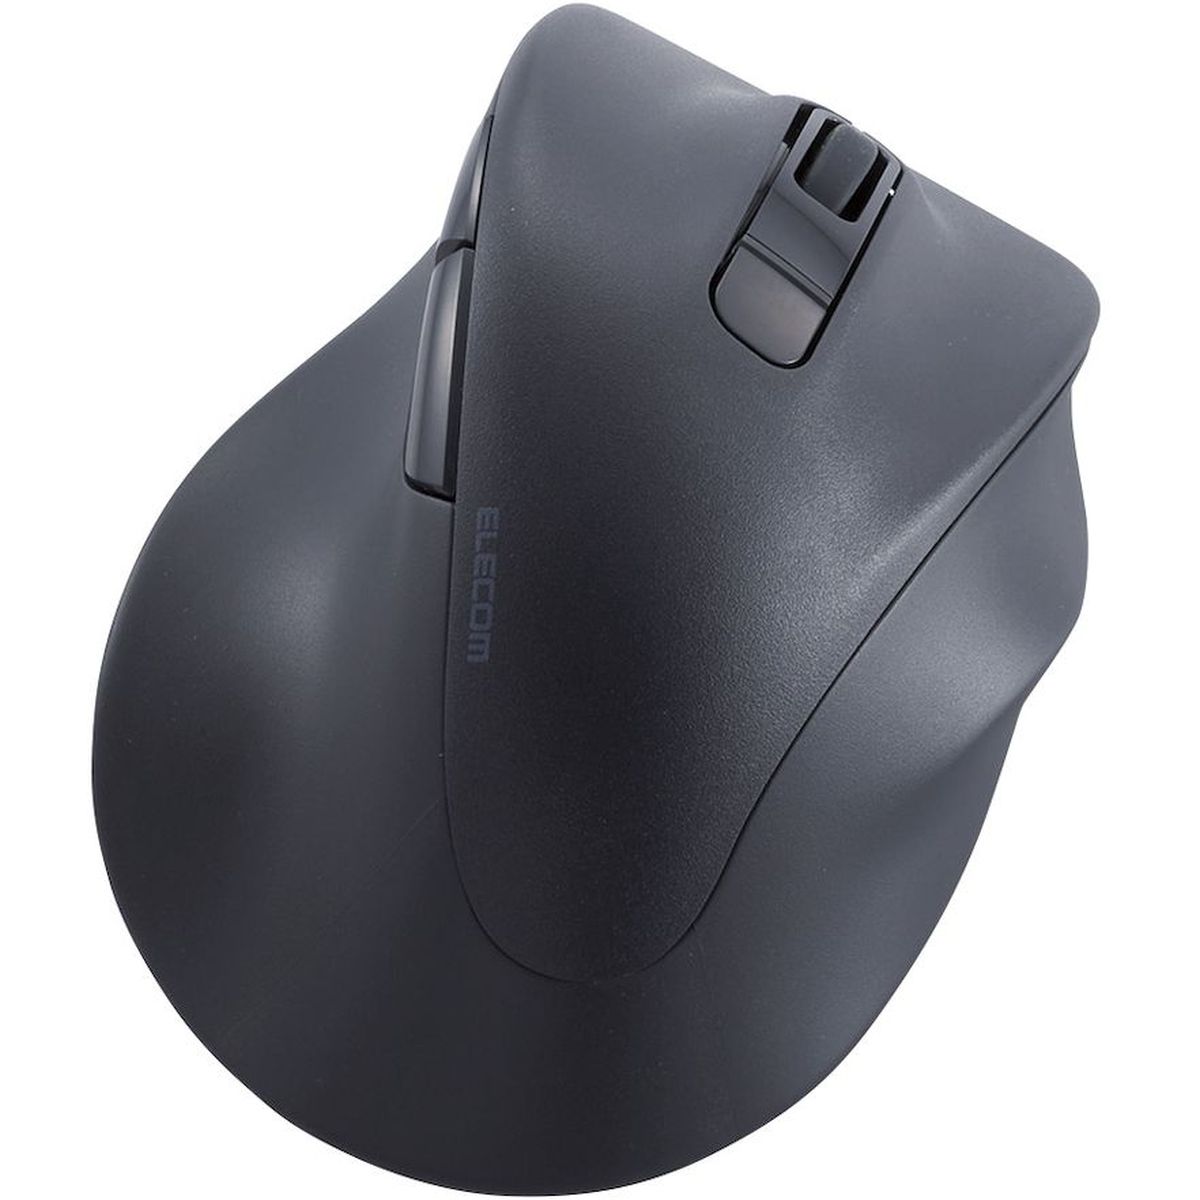 マウス/EX-G/右手用/XL/Bluetooth/5ボタン/ブラック